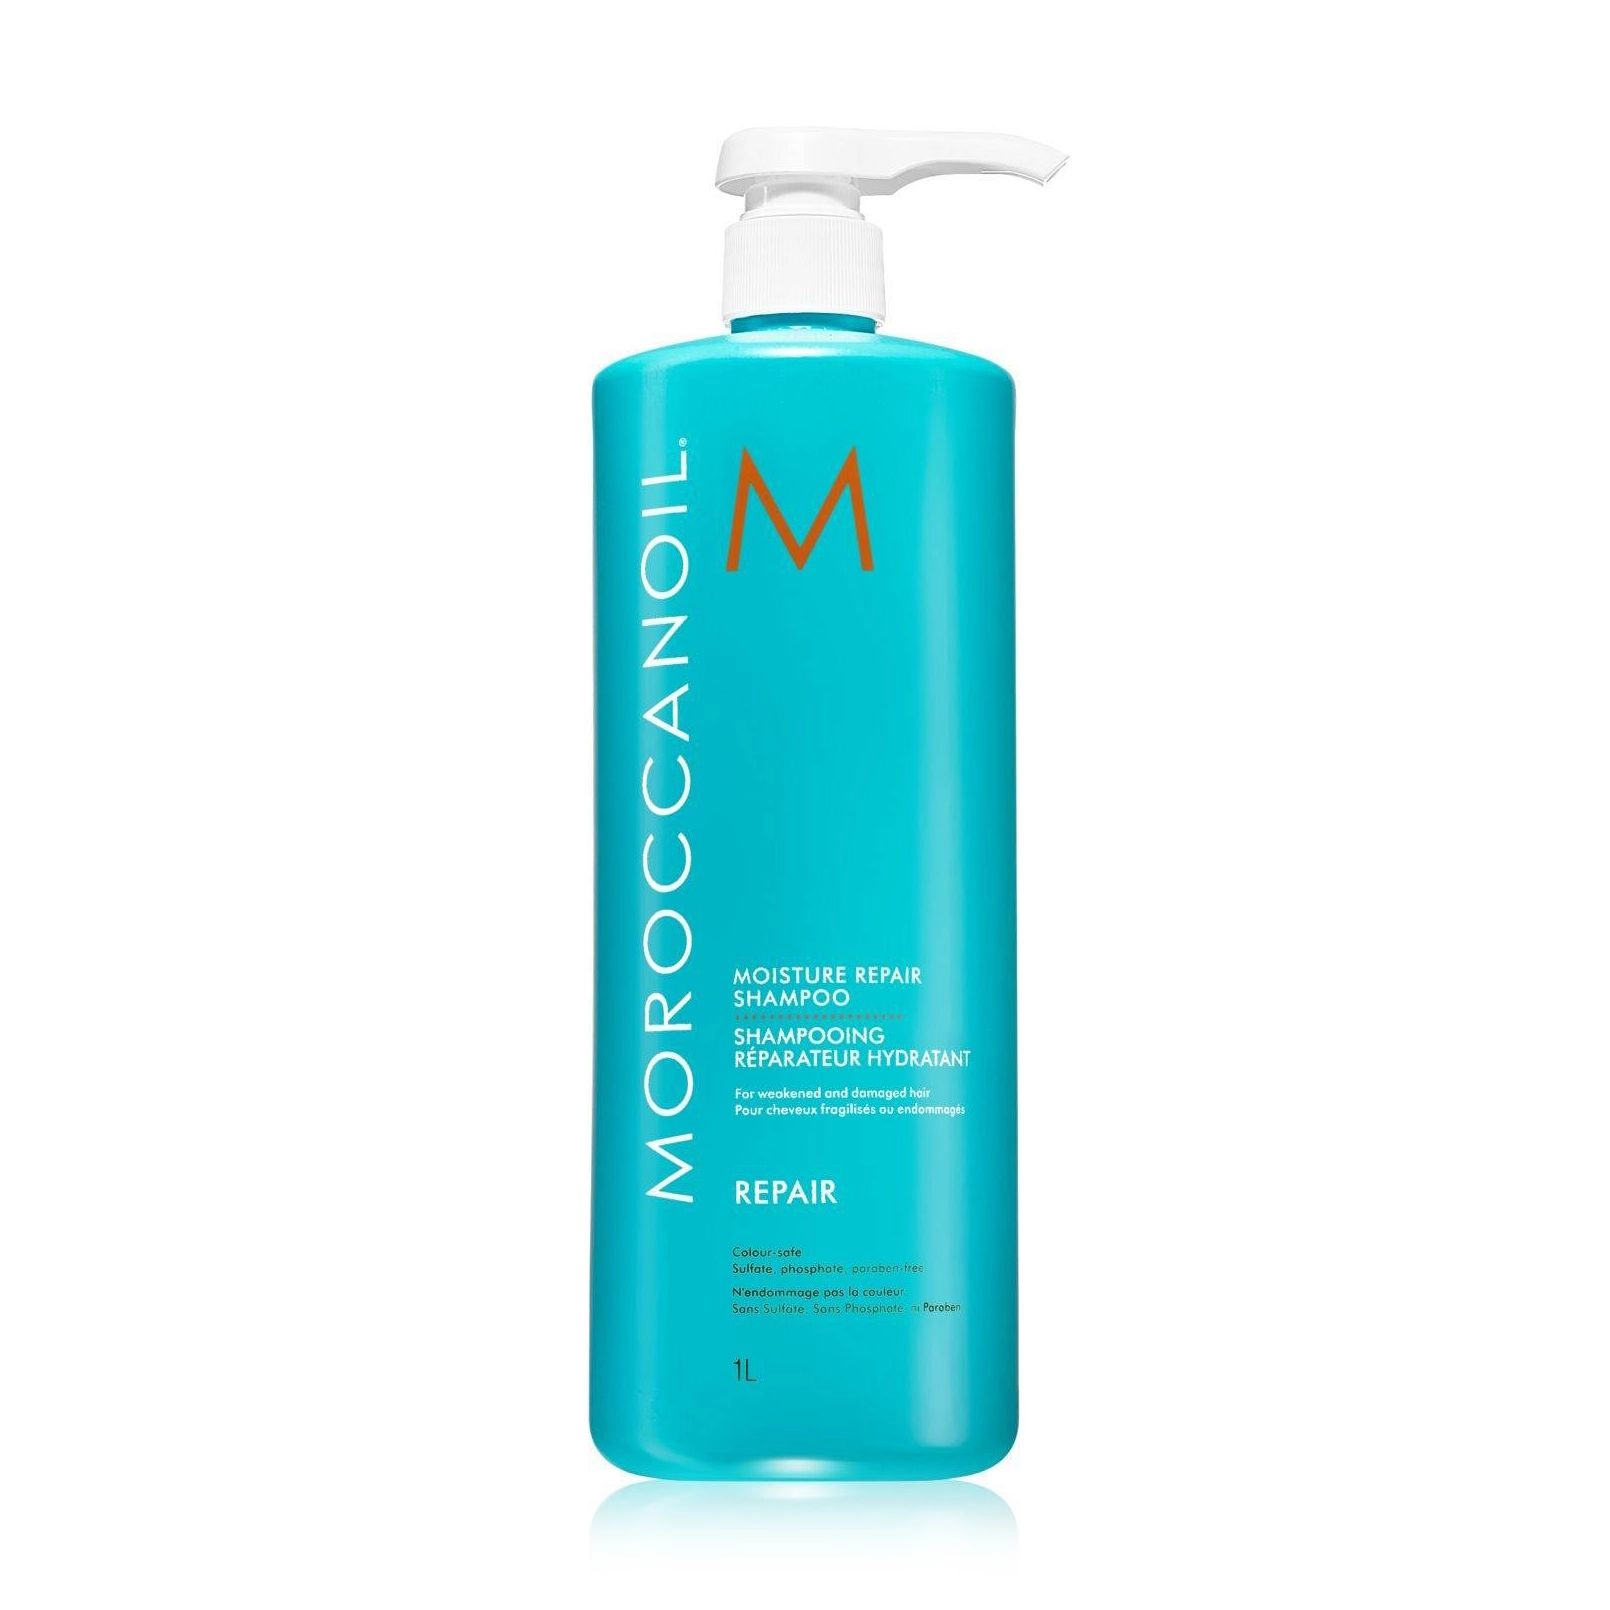 Зволожуючий шампунь для відновлення волосся - Moroccanoil Moisture Repair Shampoo, 1000 мл - фото N1